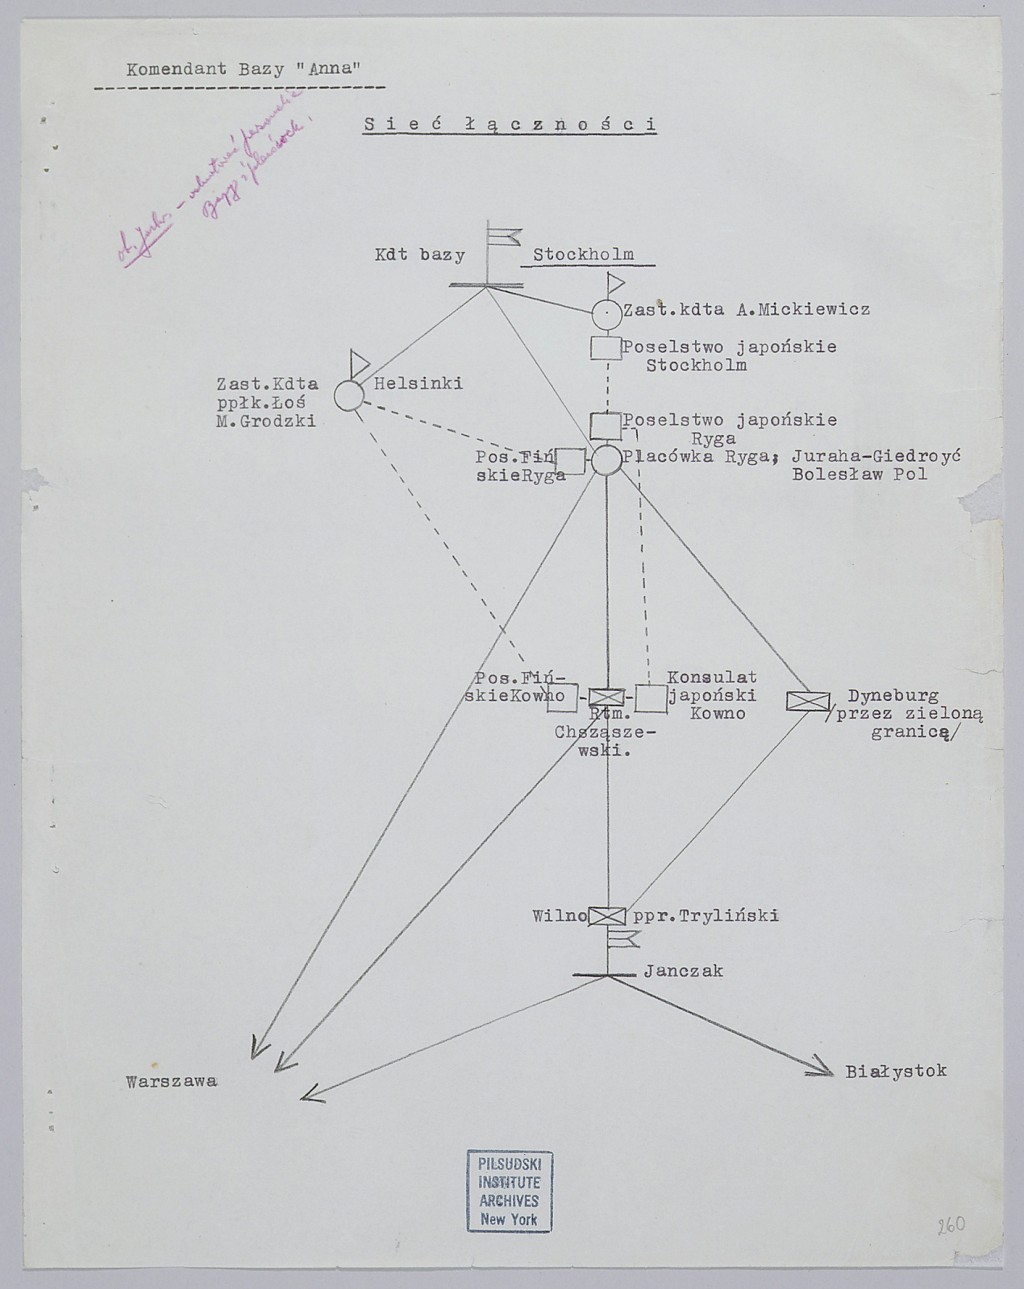 "Web of Communications" chart, July 1940